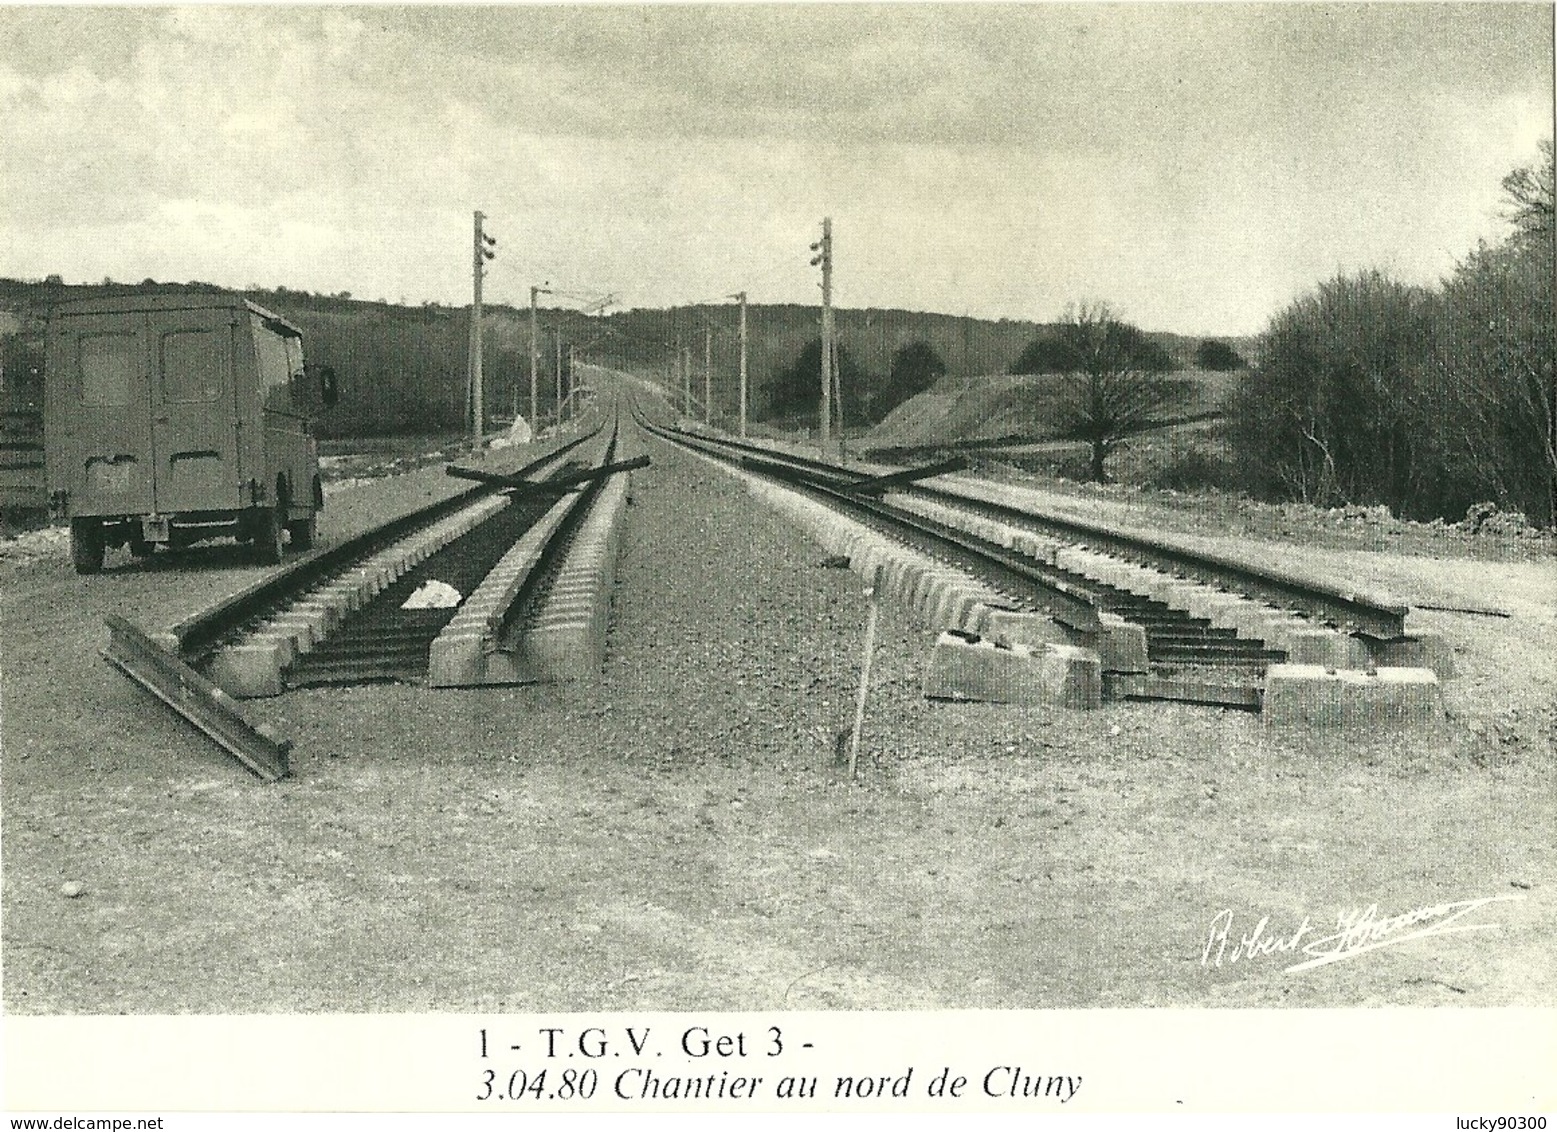 CHANTIER VOIE FERRÉE TGV - CONSTRUCTION CHEMIN DE FER ET PONT - SECTEUR CLUNY RN 79  - AVRIL 1980 - RARE 600 EXEMPLAIRES - Ouvrages D'Art